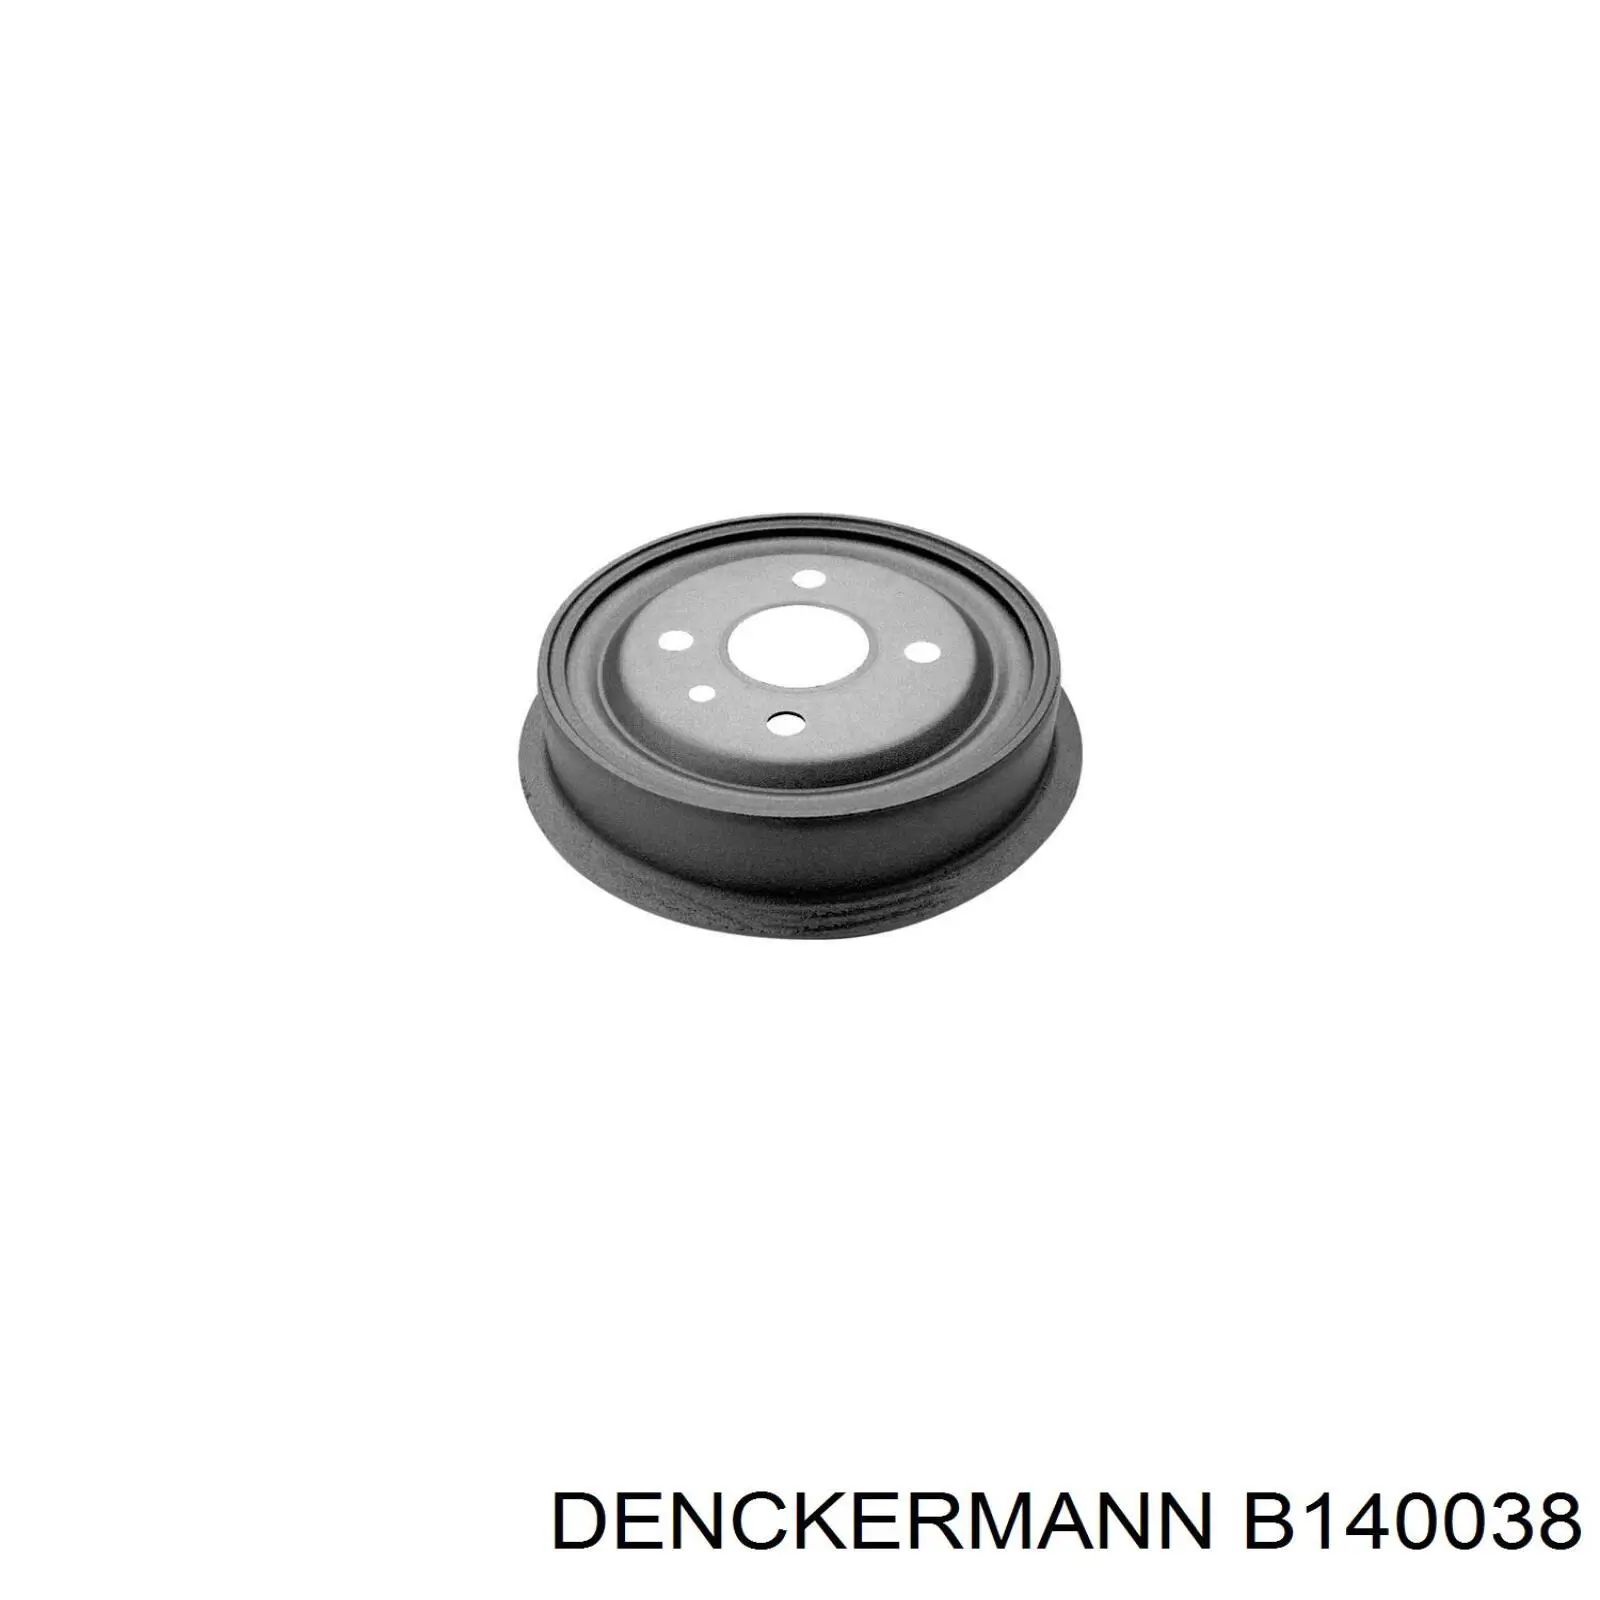 B140038 Denckermann tambor do freio traseiro